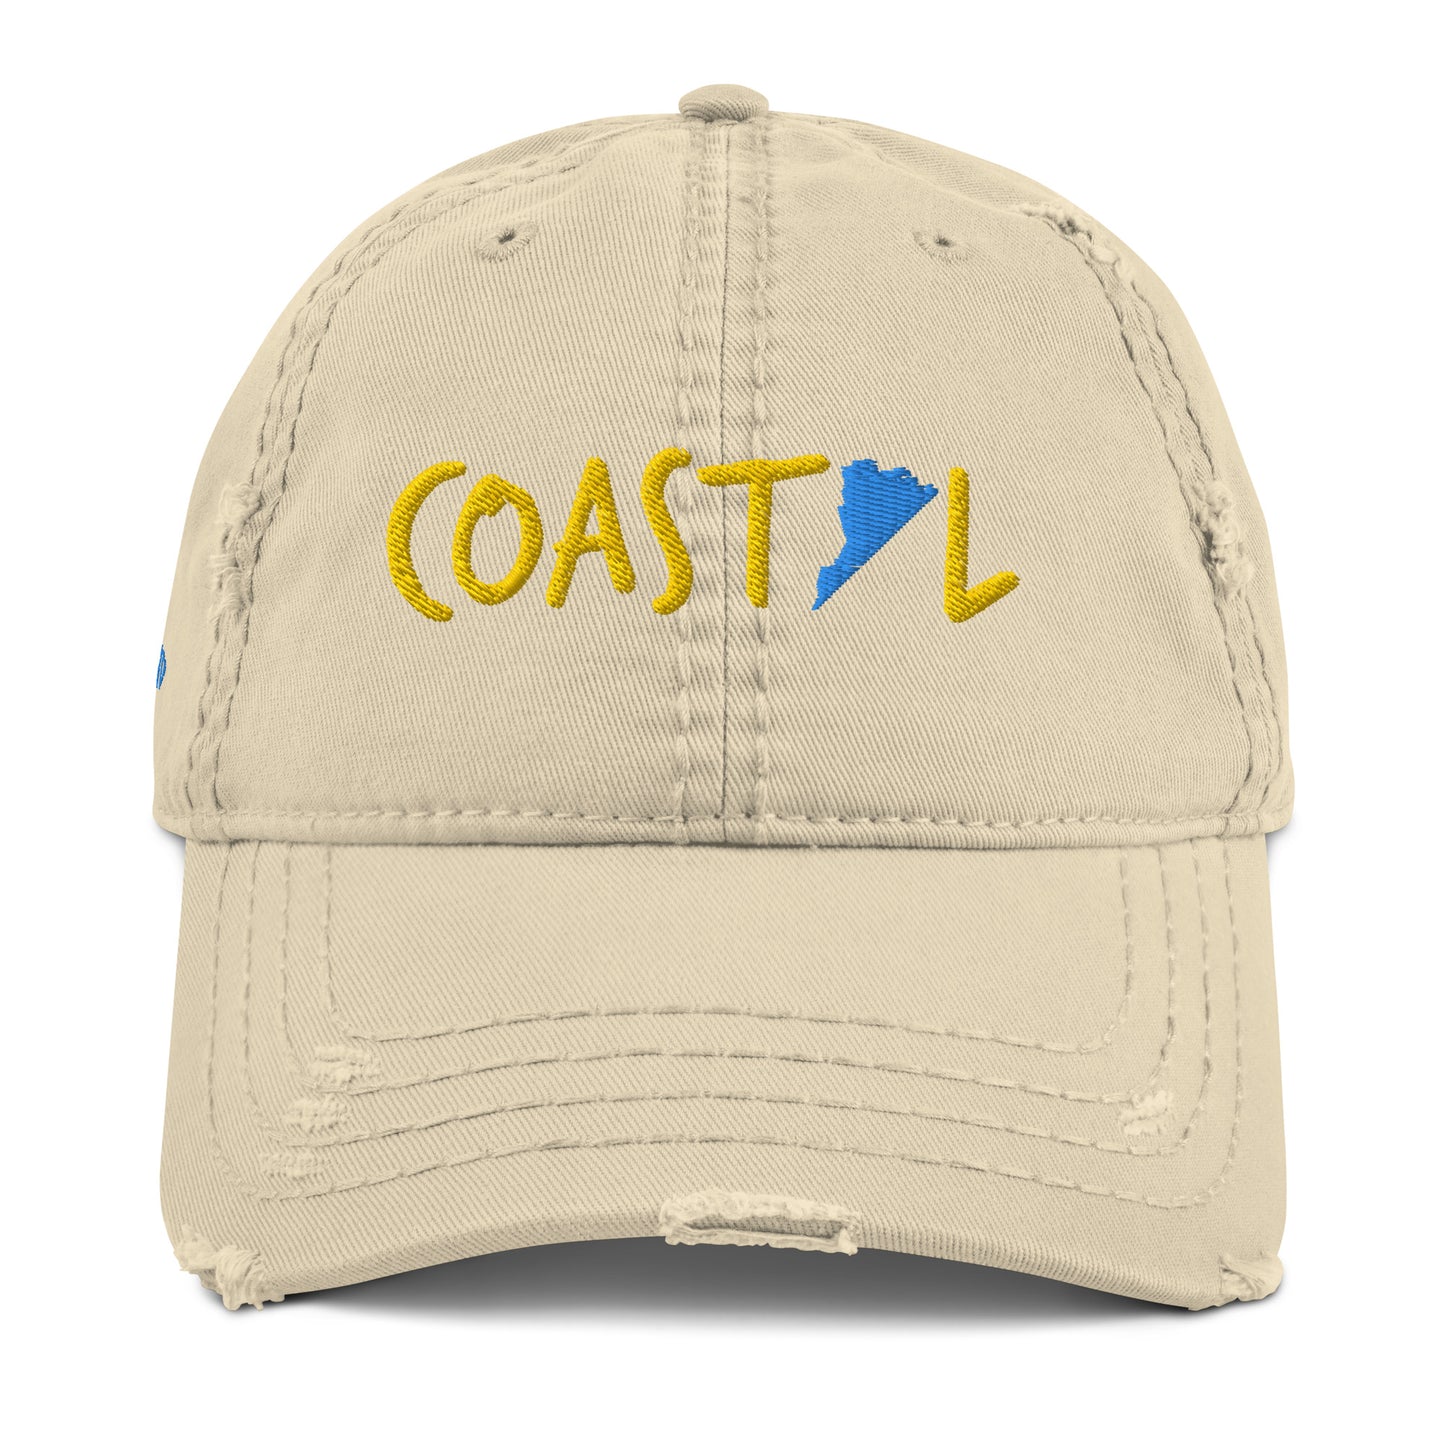 Coastal Virginia™ Distressed Dad Hat